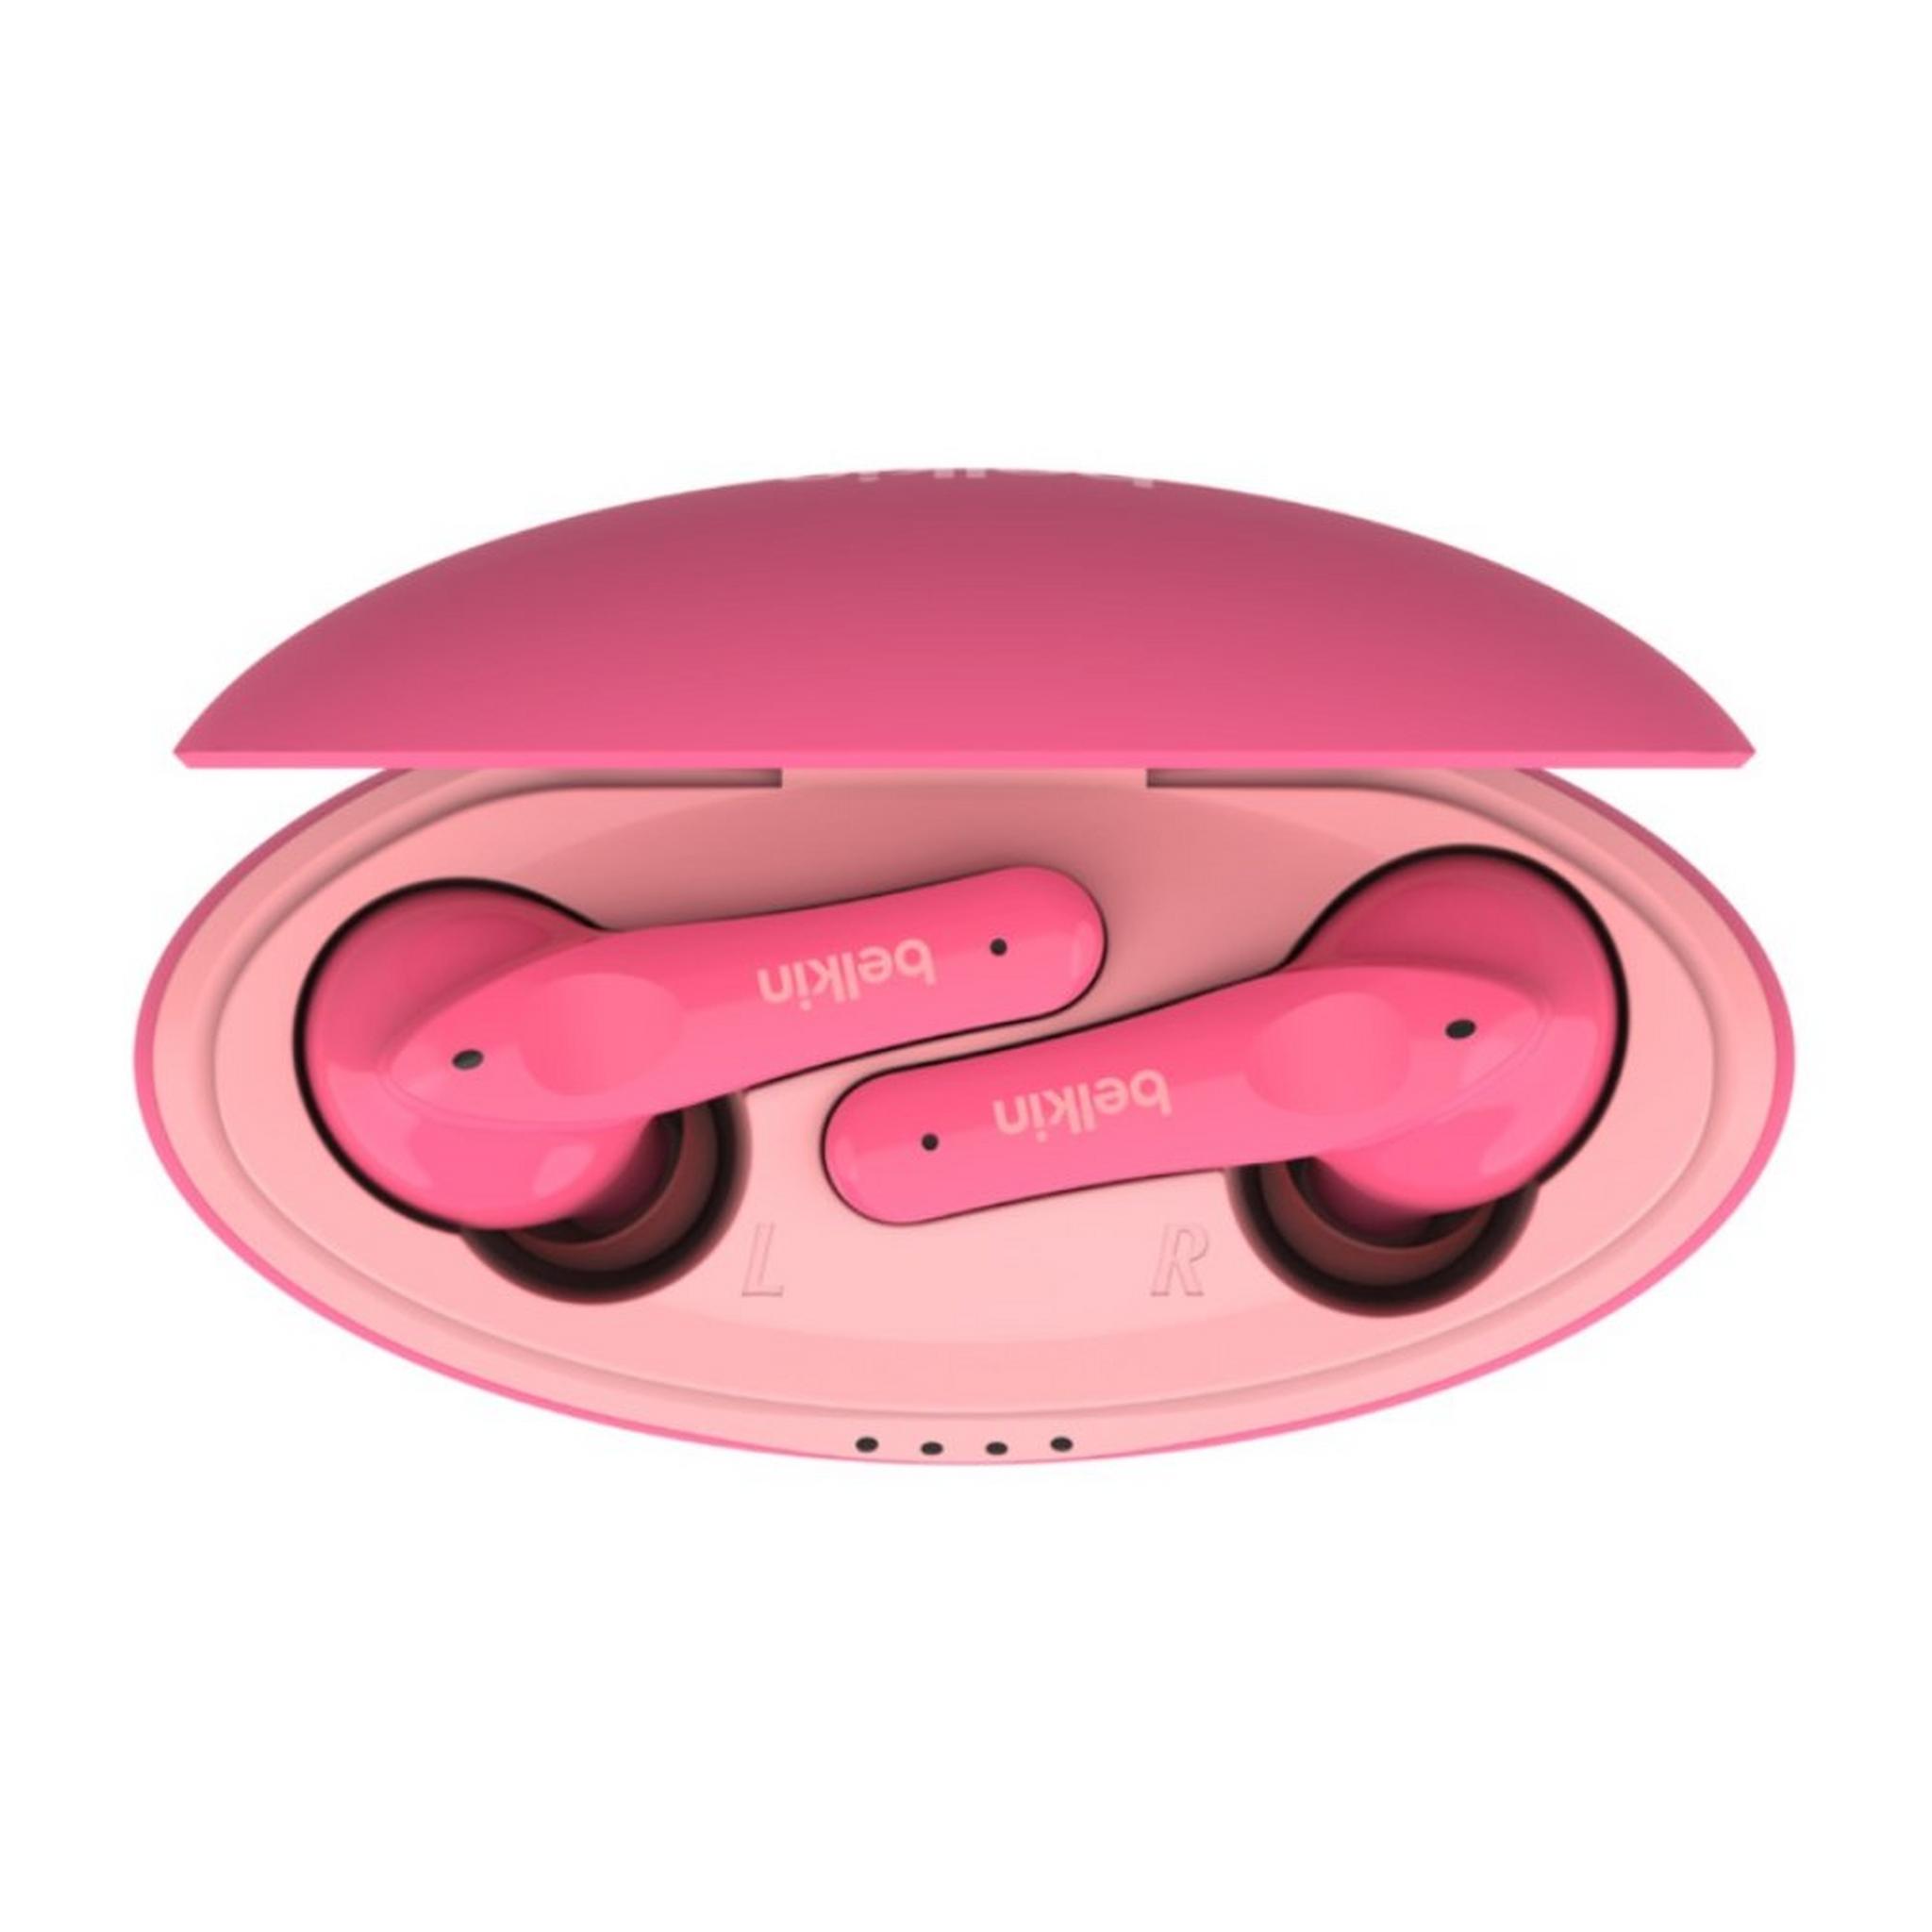 Belkin Soundform Nano Wireless Earbuds​ for Kids - Pink